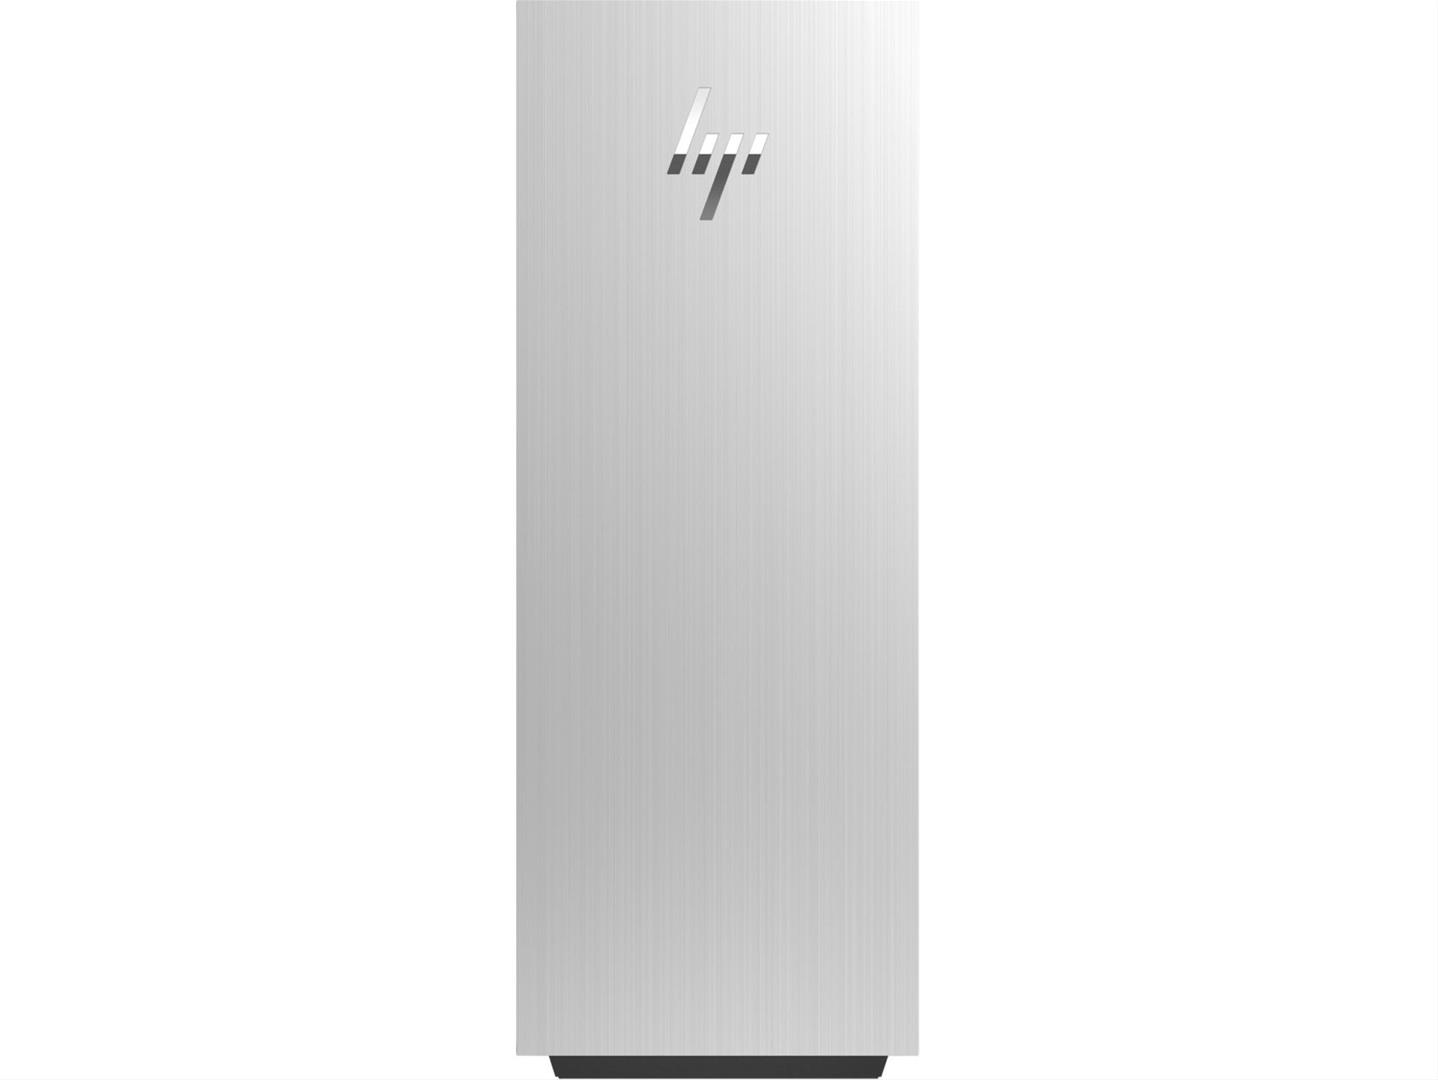 Računalo HP ENVY TE02-0738nz / i7 / 32 GB